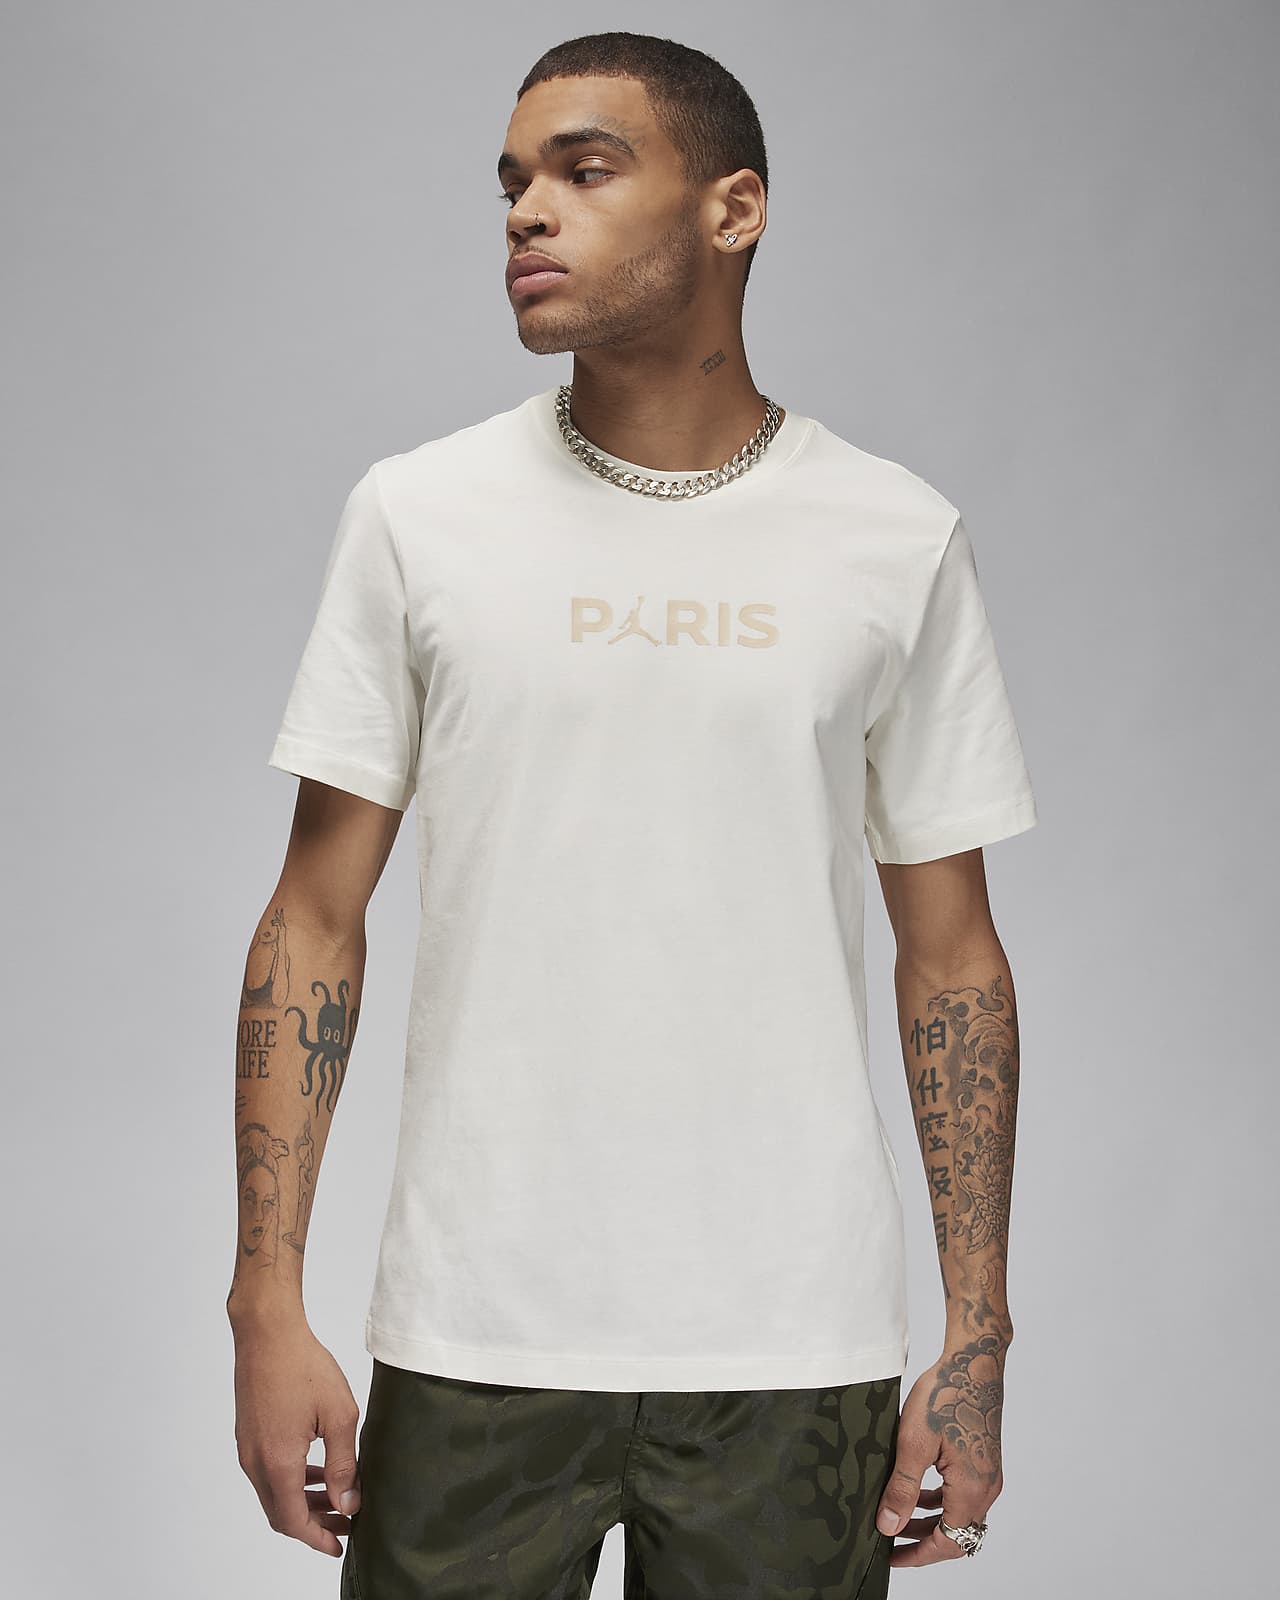 Paris Saint-Germain Herren-T-Shirt